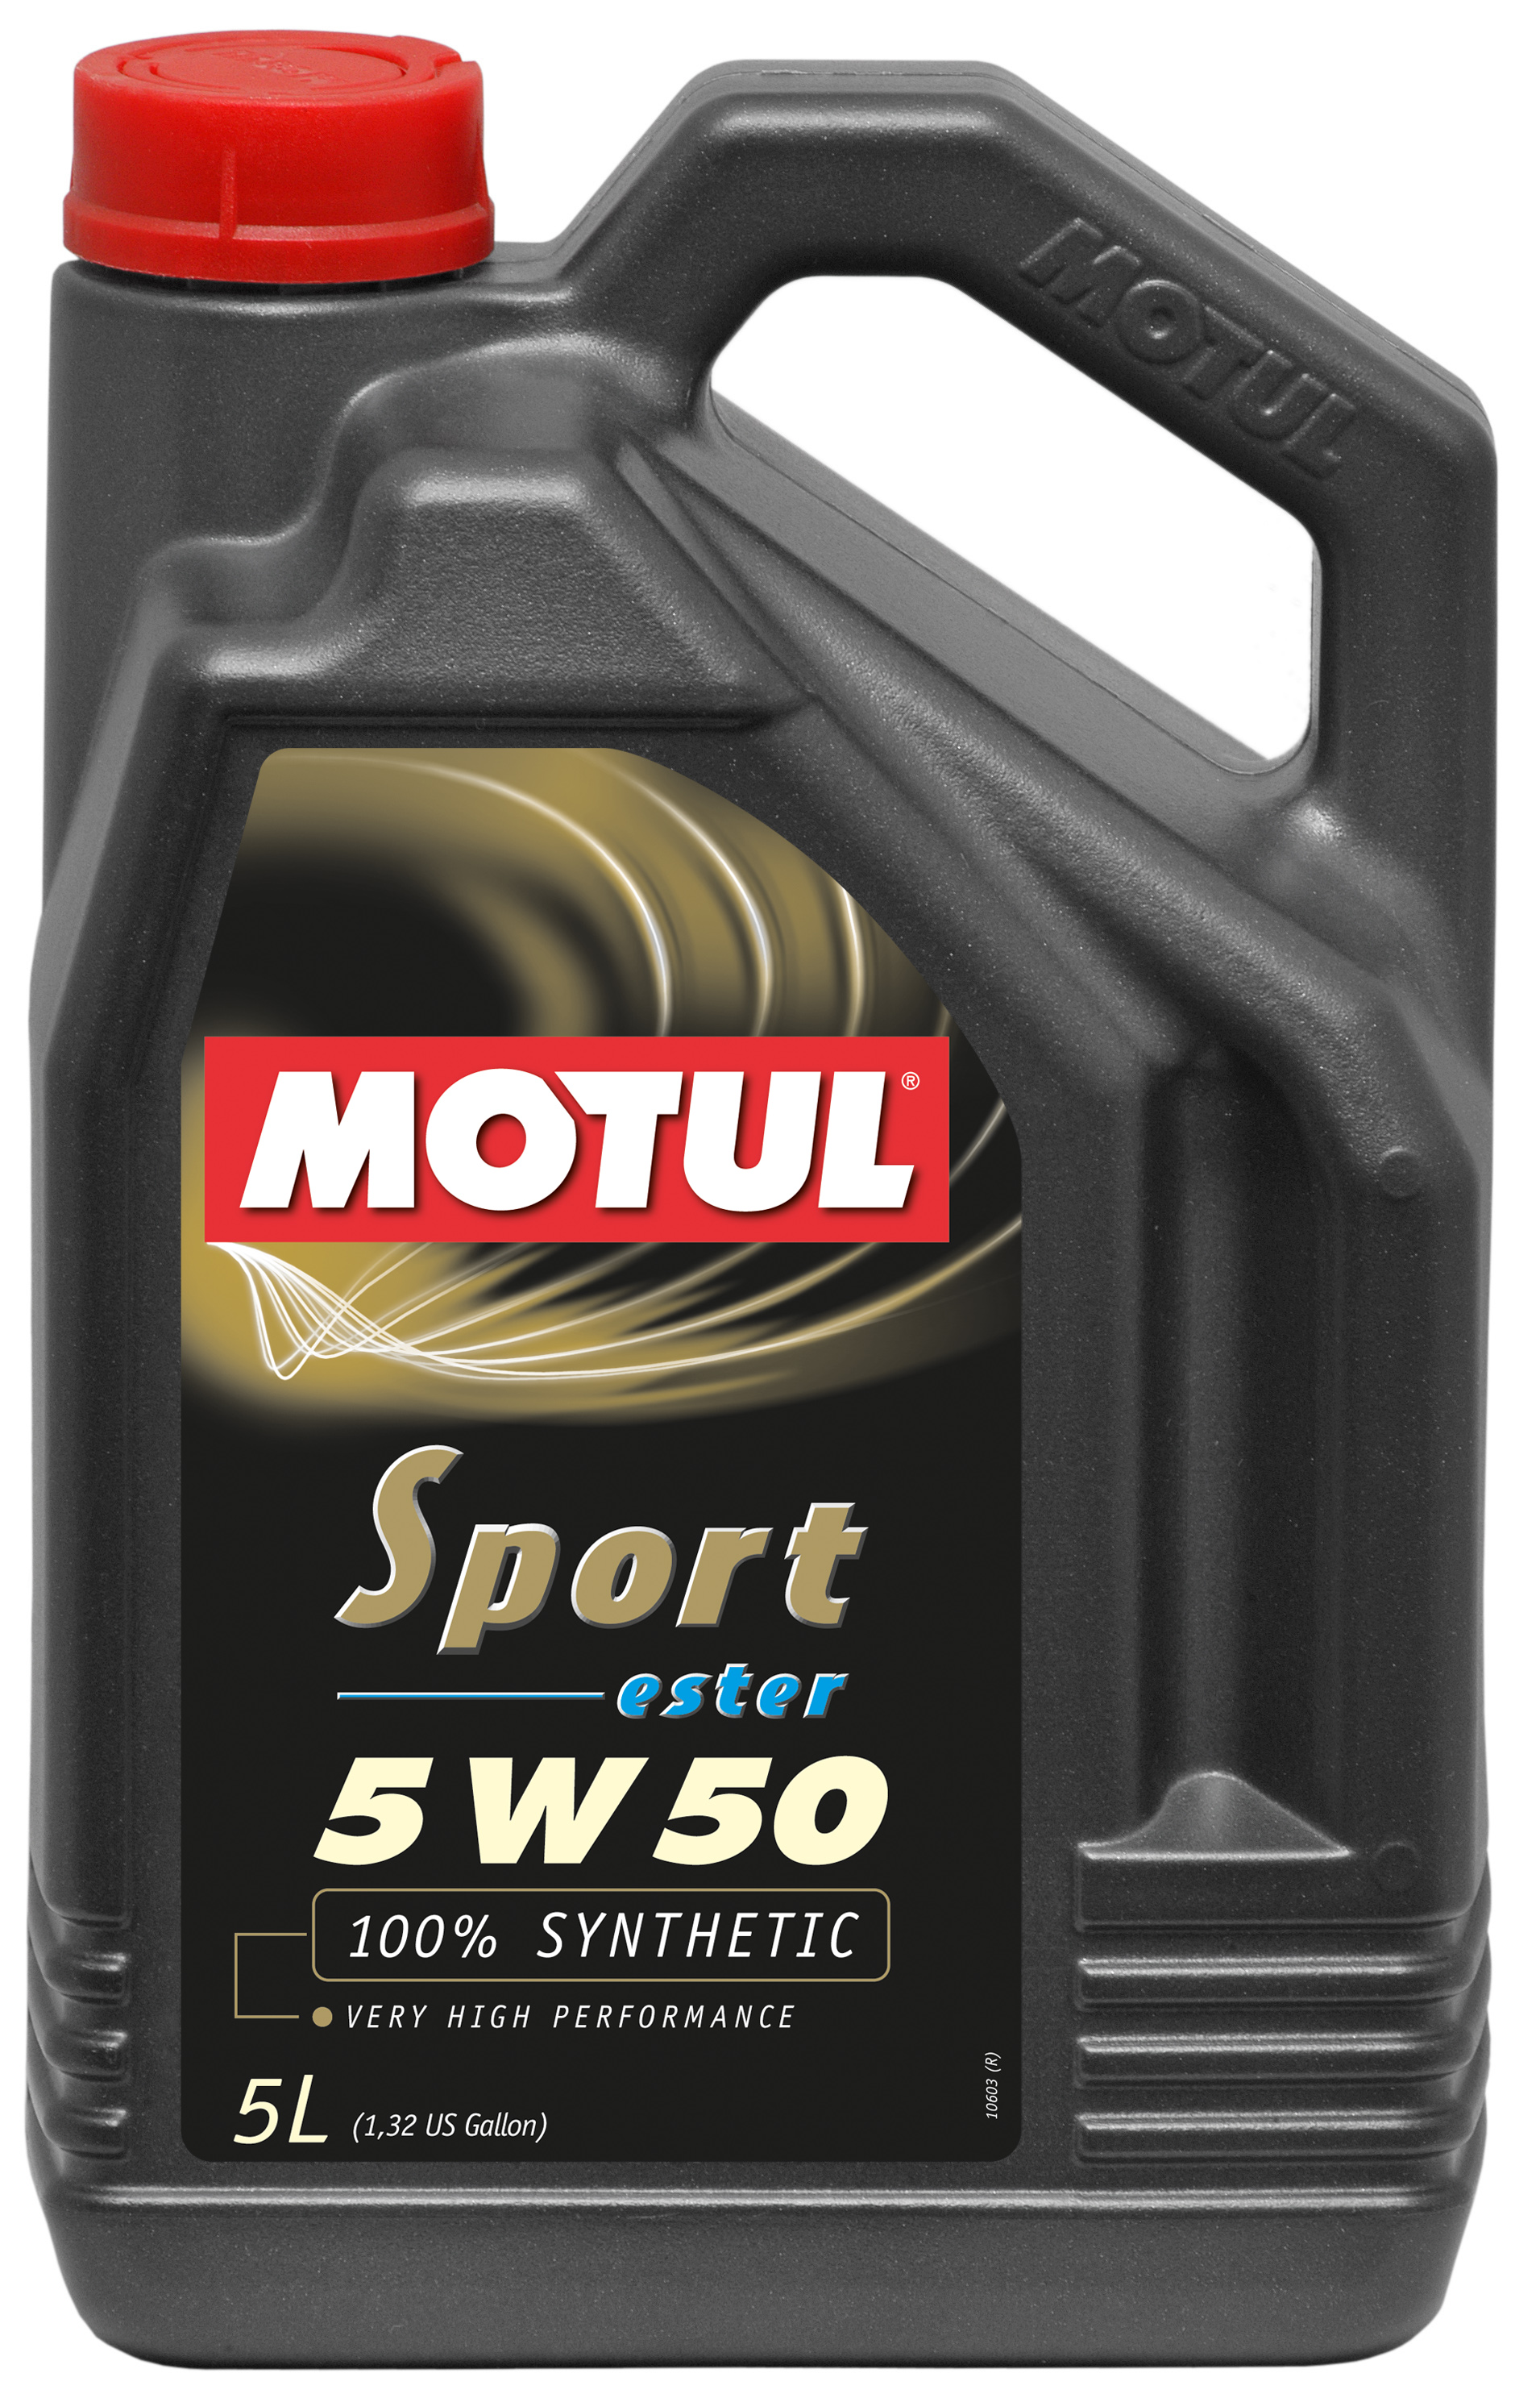 MOTUL SPORT 5W50 - 5L - Synthetic Engine Oil